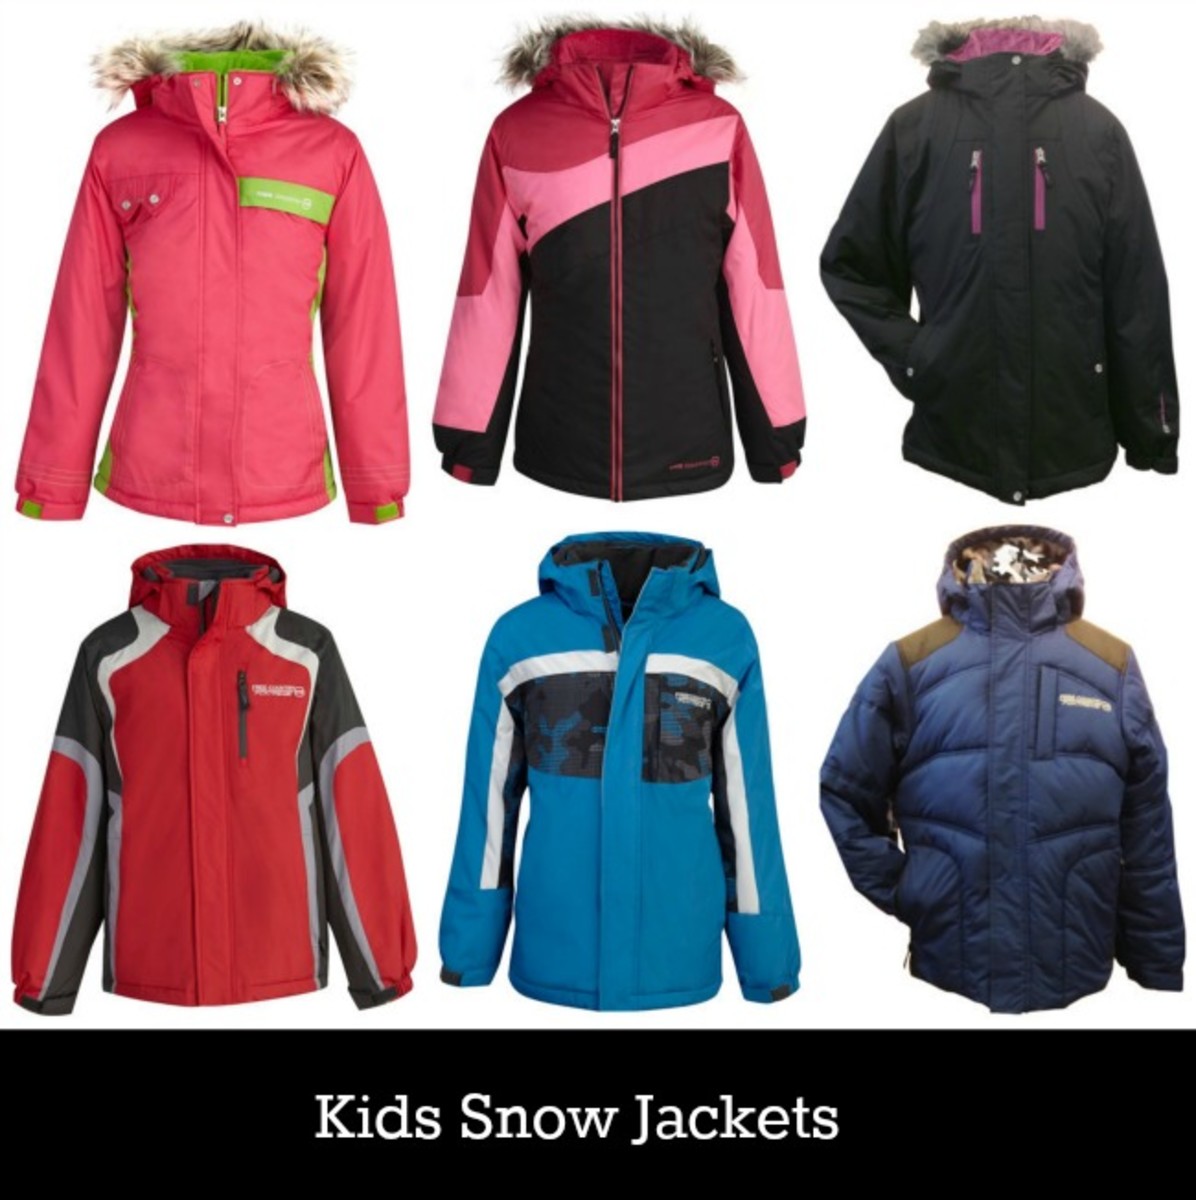 kids snow jackets Archives - MomTrendsMomTrends